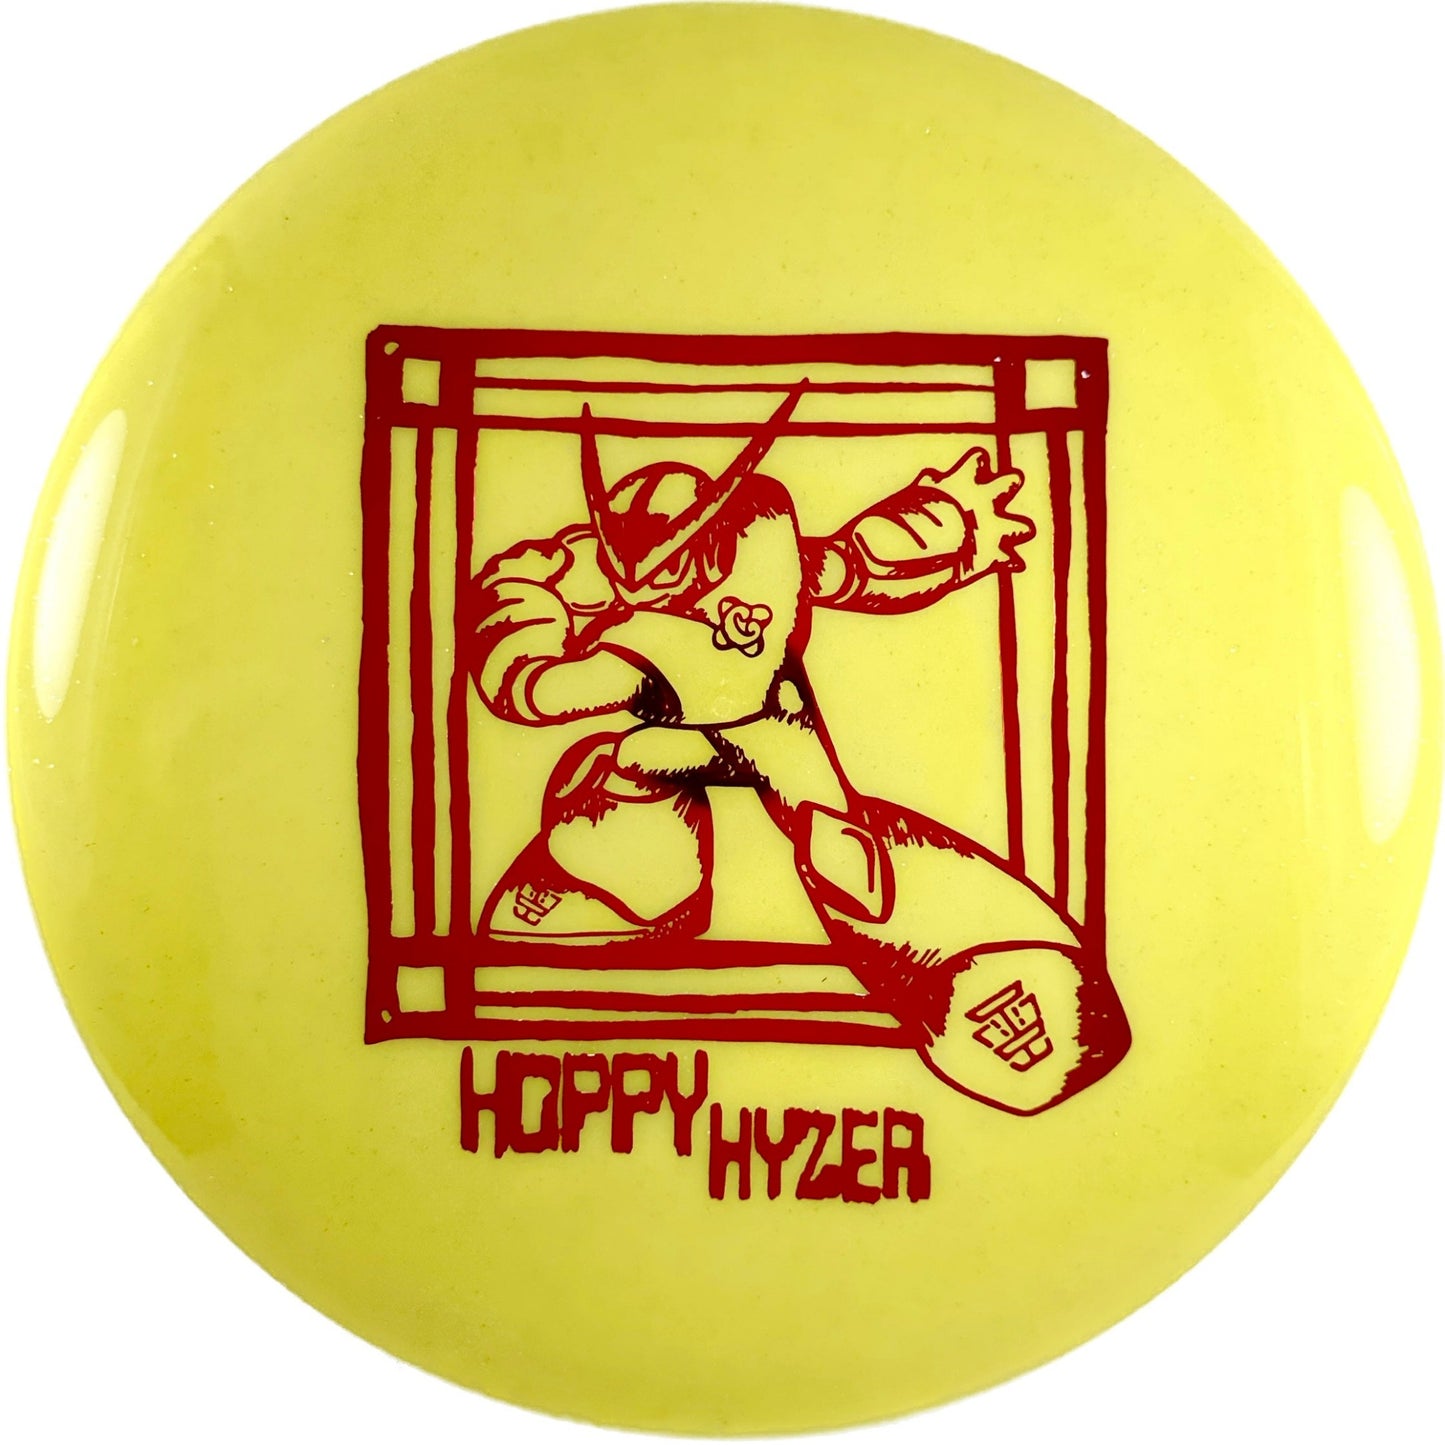 Clash Discs Steady Popcorn (Hoppy Hyzer Stamp